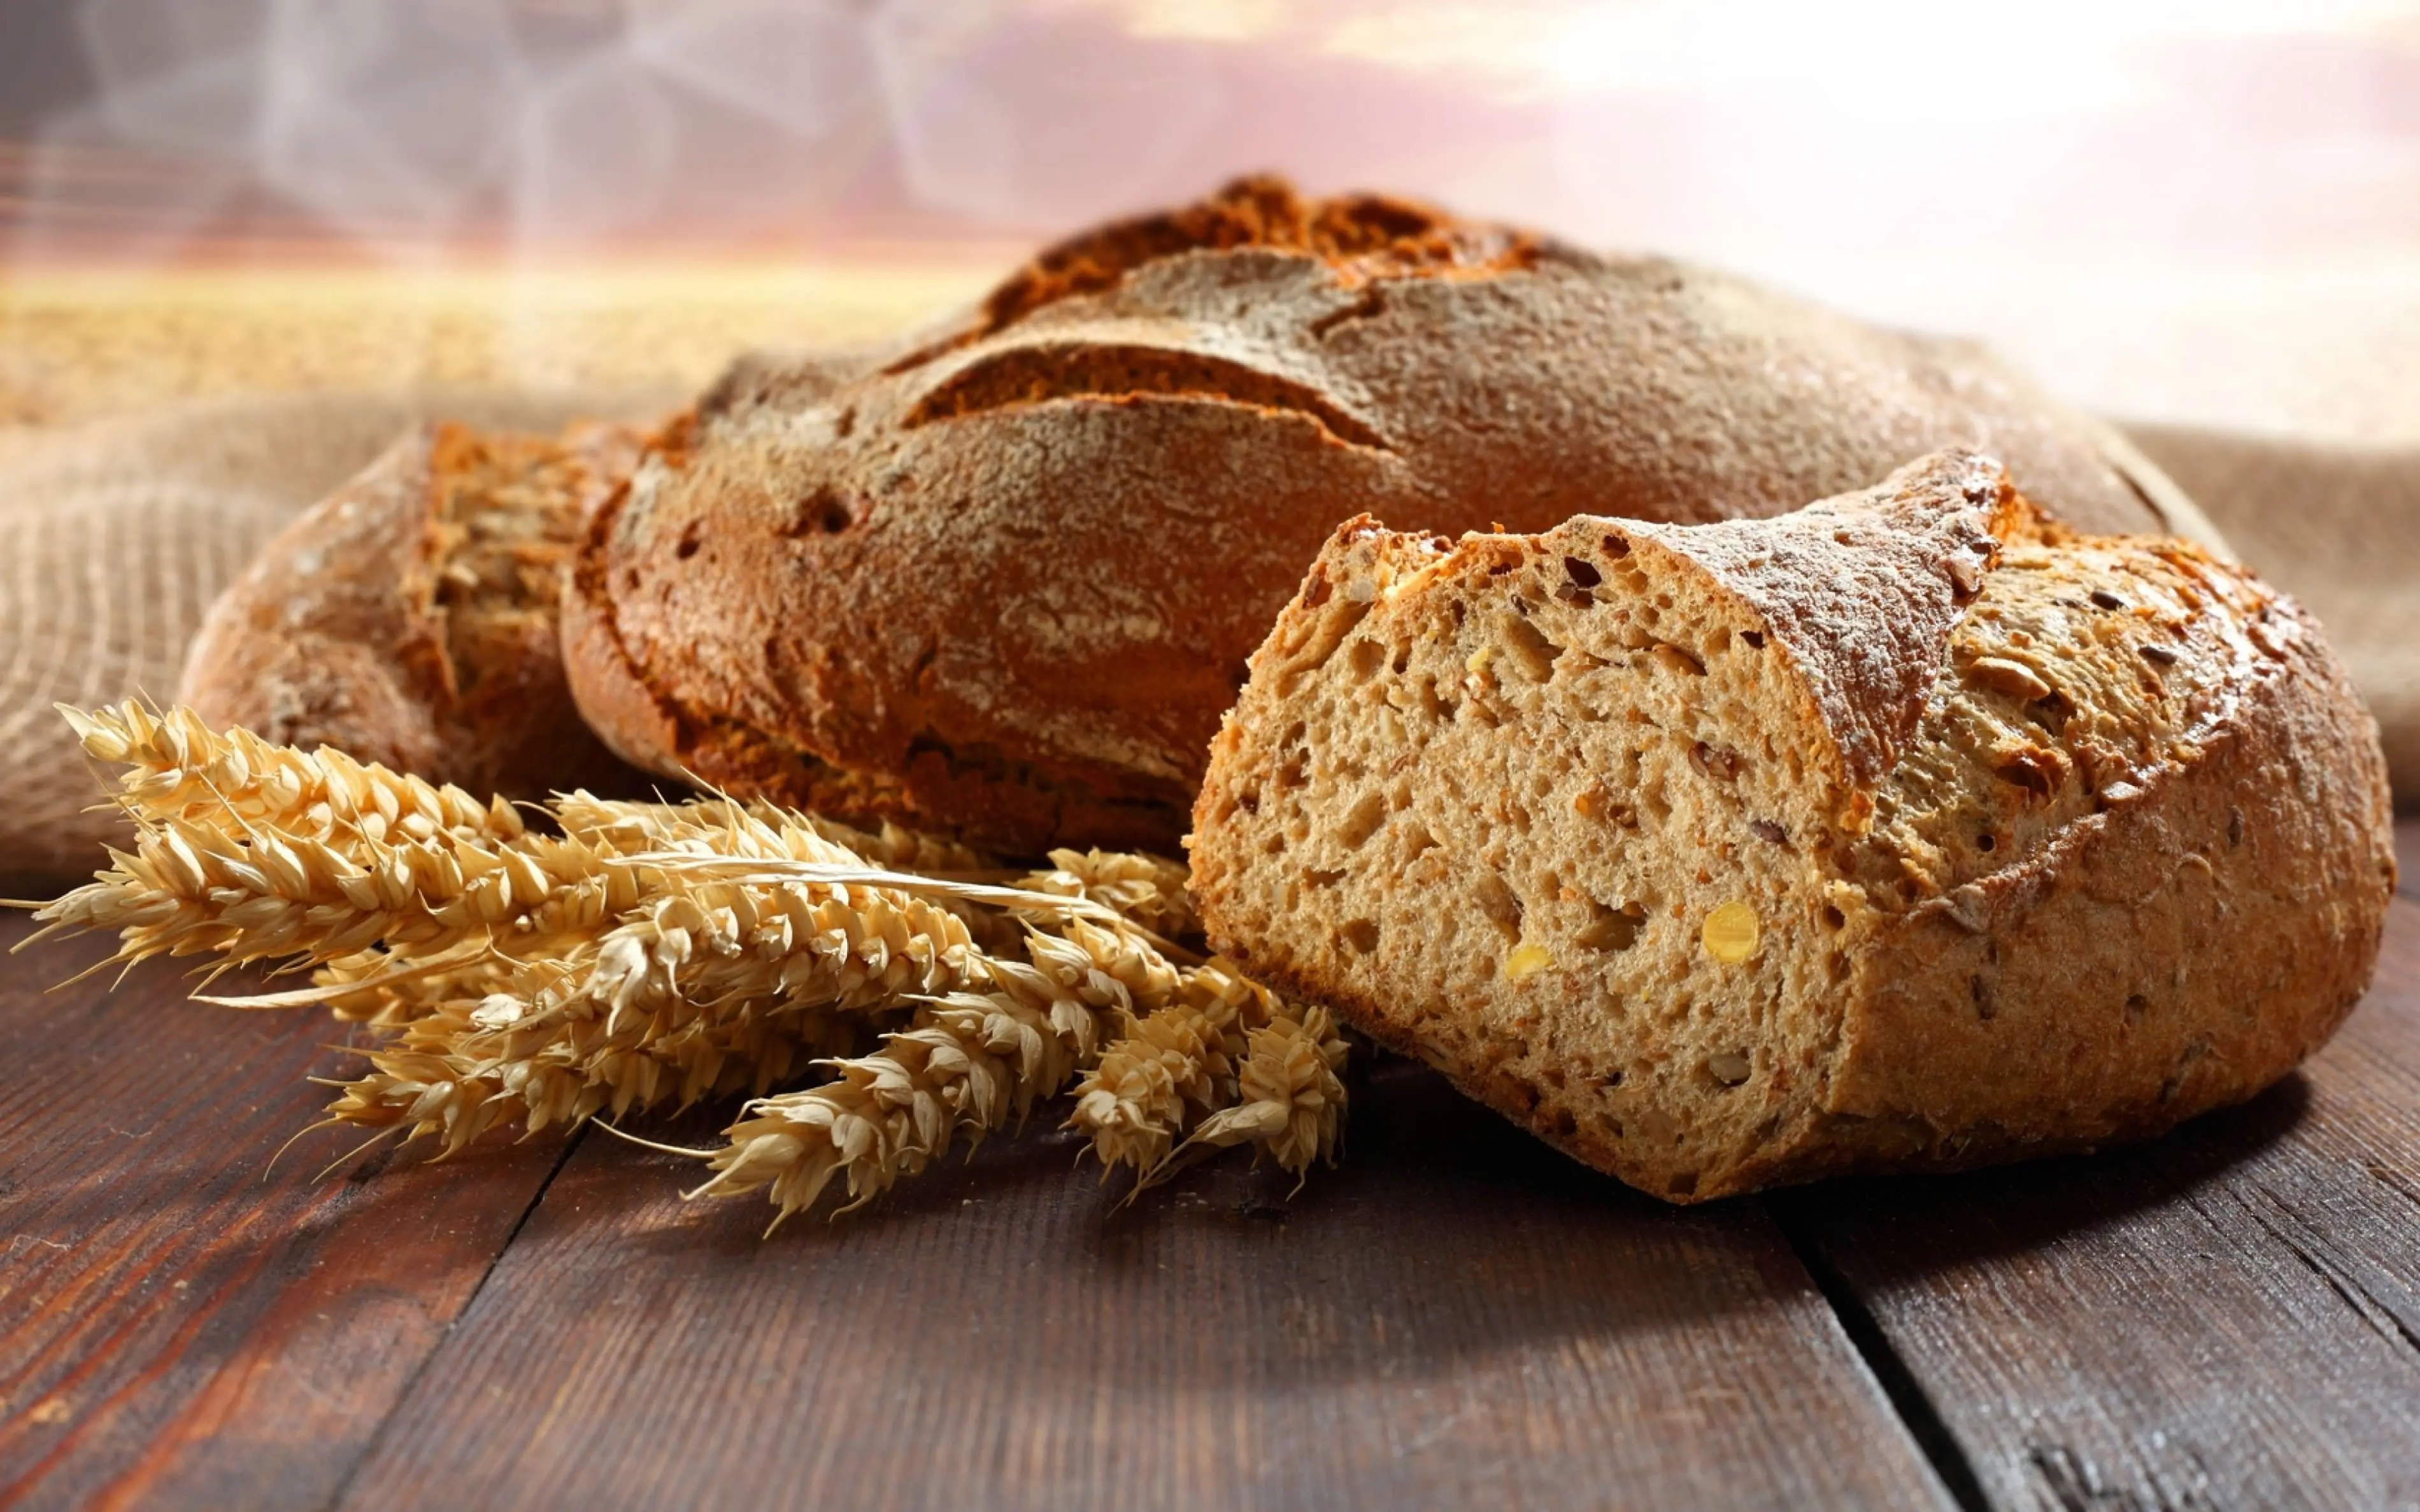 Roti gandum dianggap bisa membantu program diet kamu, benarkah? (Sumber Foto: Cook Diary)